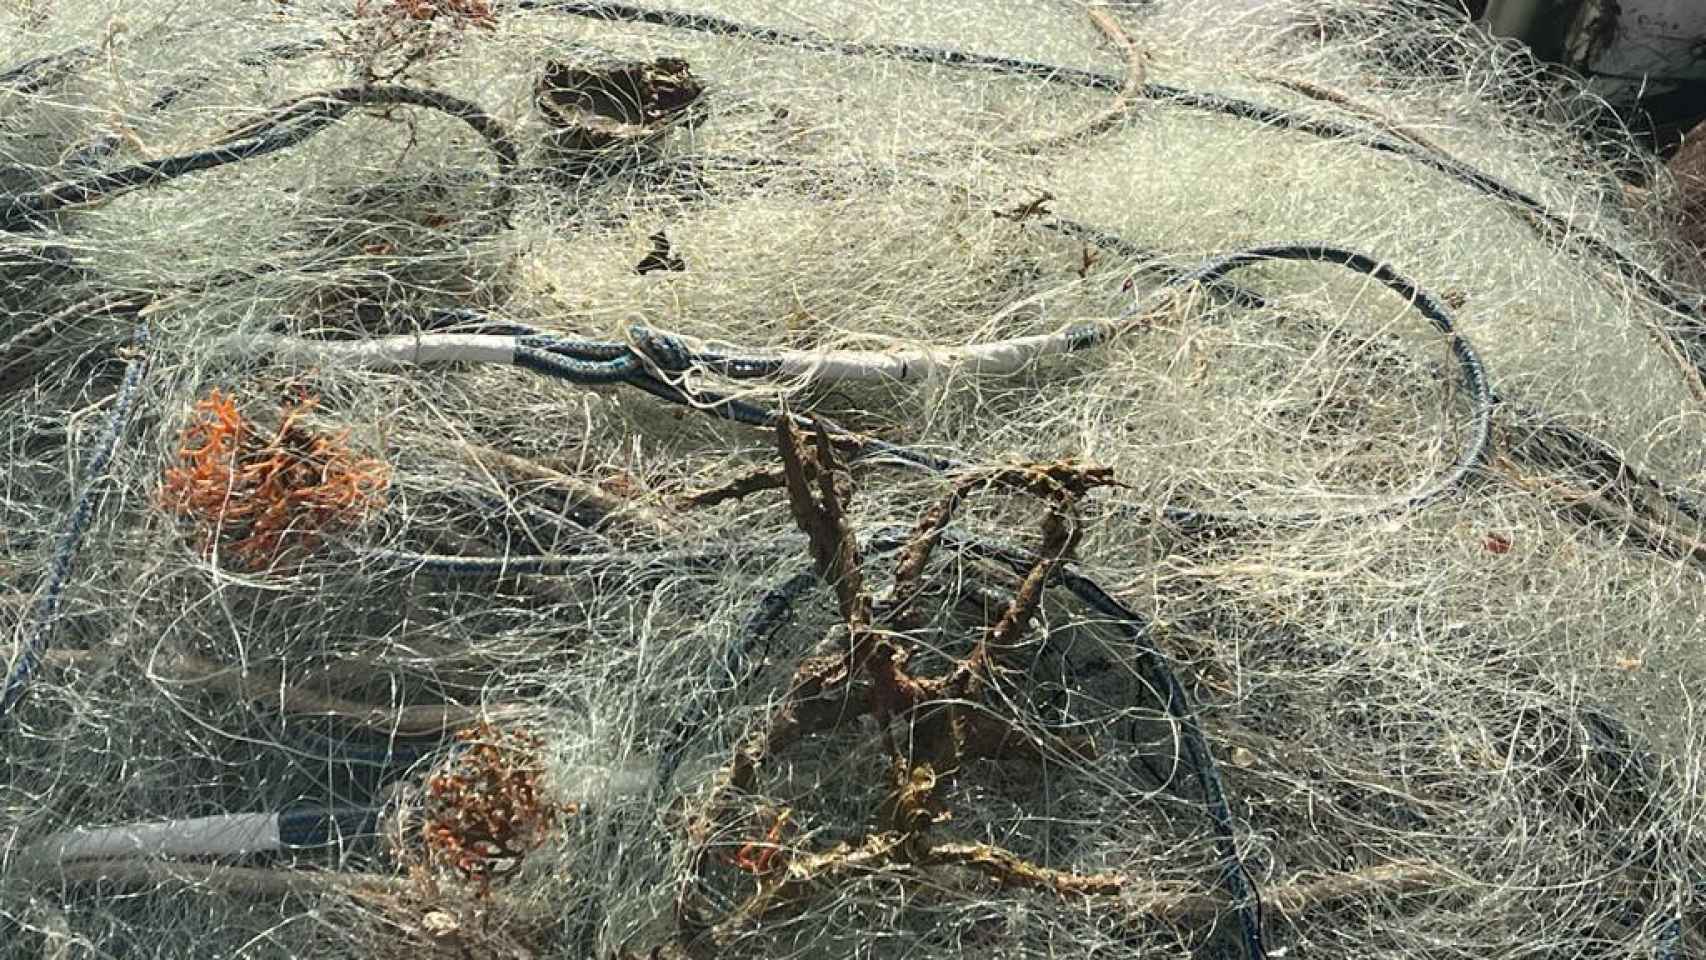 Las redes de pesca con varias gorgonias atrapadas.